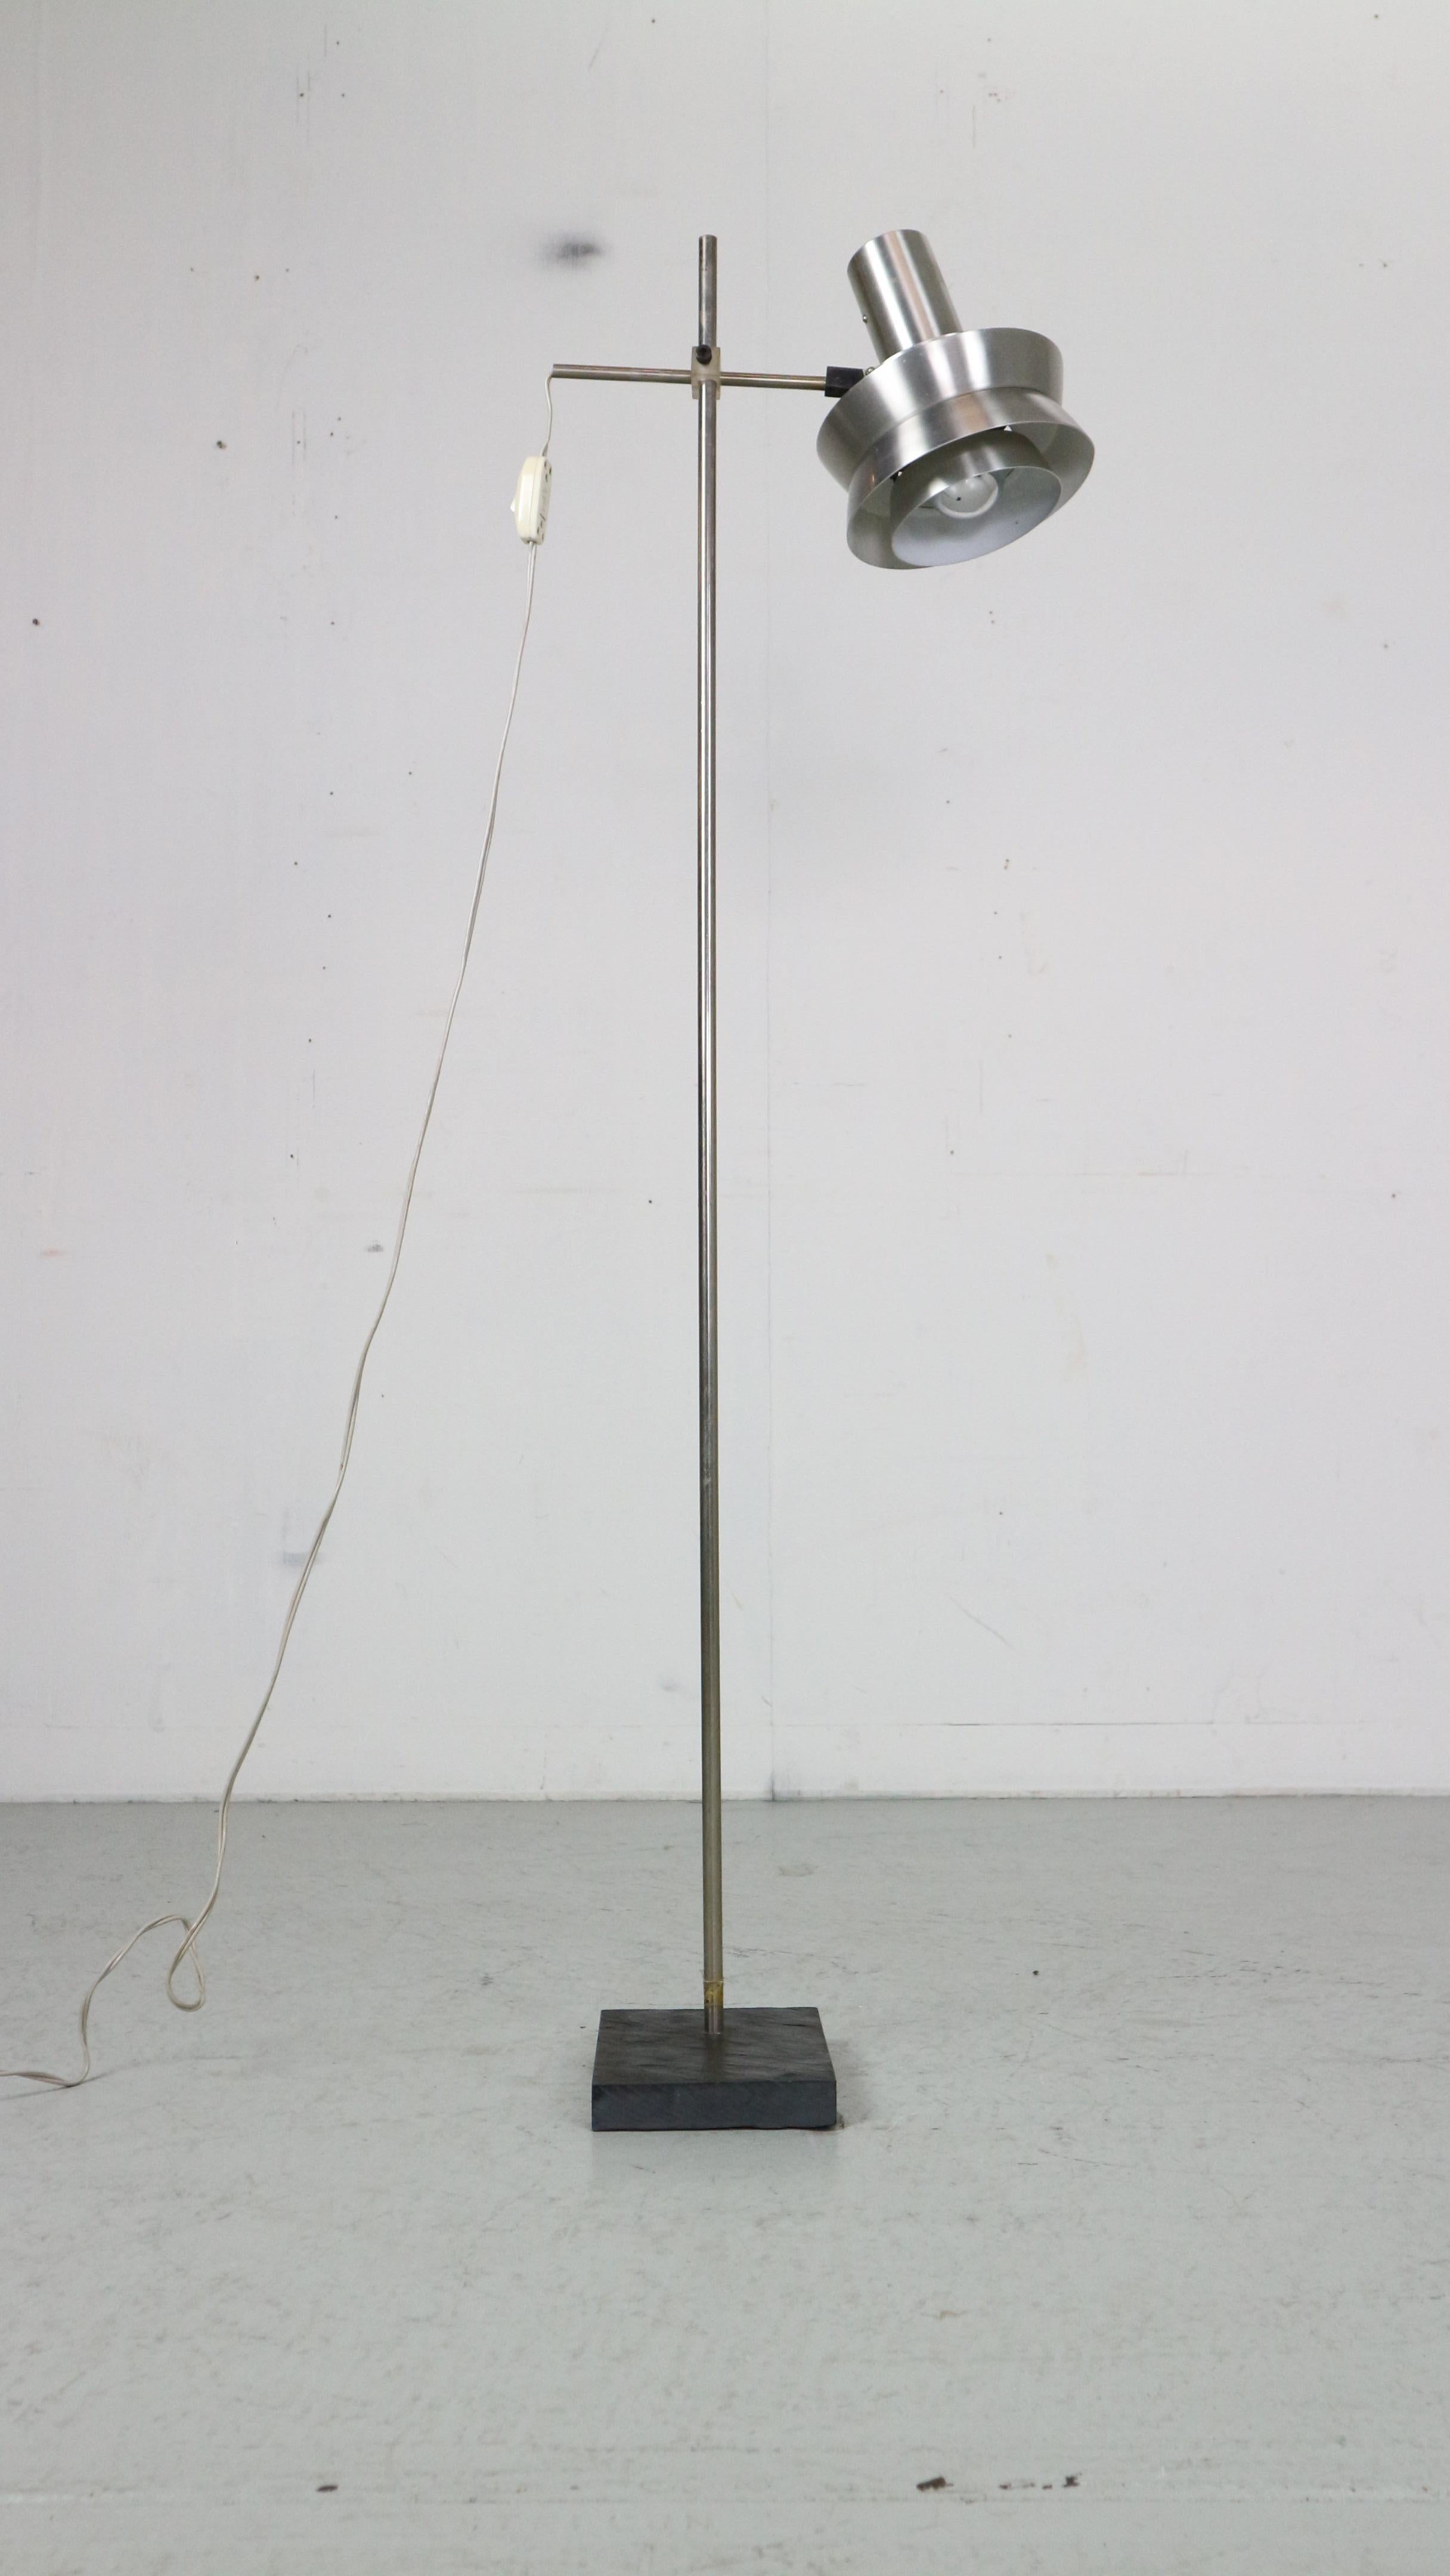 Skandinavische moderne Stehleuchte, entworfen in den 1970er Jahren, Dänemark.

Der Lampenschirm aus verchromtem Metall ist in zwei Farben erhältlich - Silber und Rot - und verfügt über einen An/Aus-Knopf.
Sie können die Höhe und Richtung des